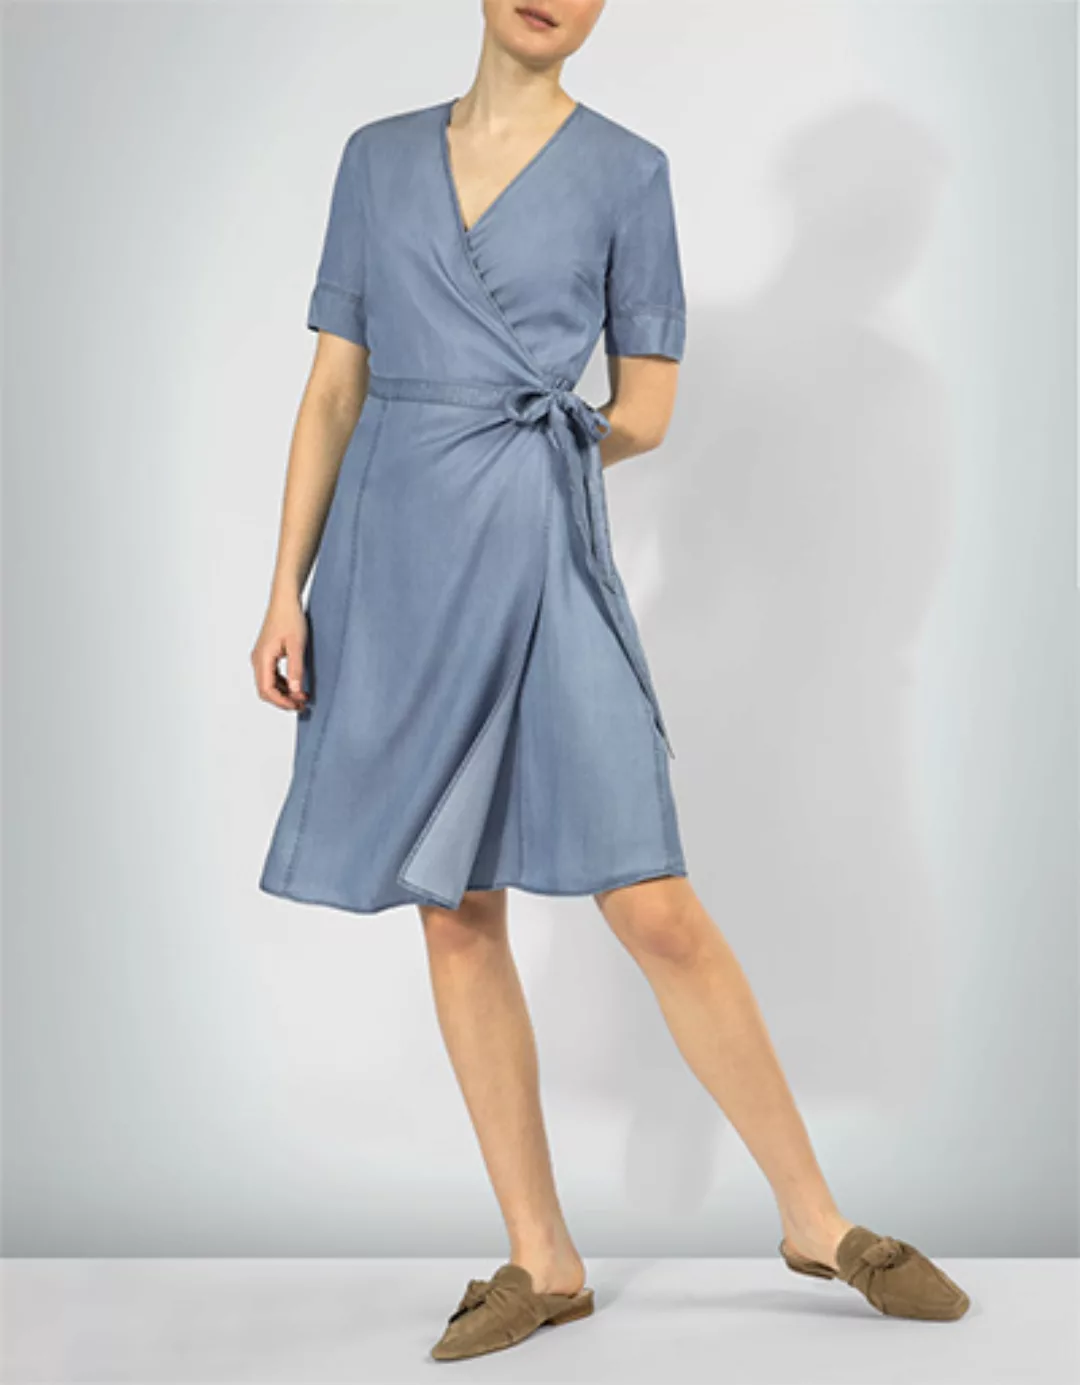 Marc O'Polo Damen Kleid 903 1114 21277/001 günstig online kaufen